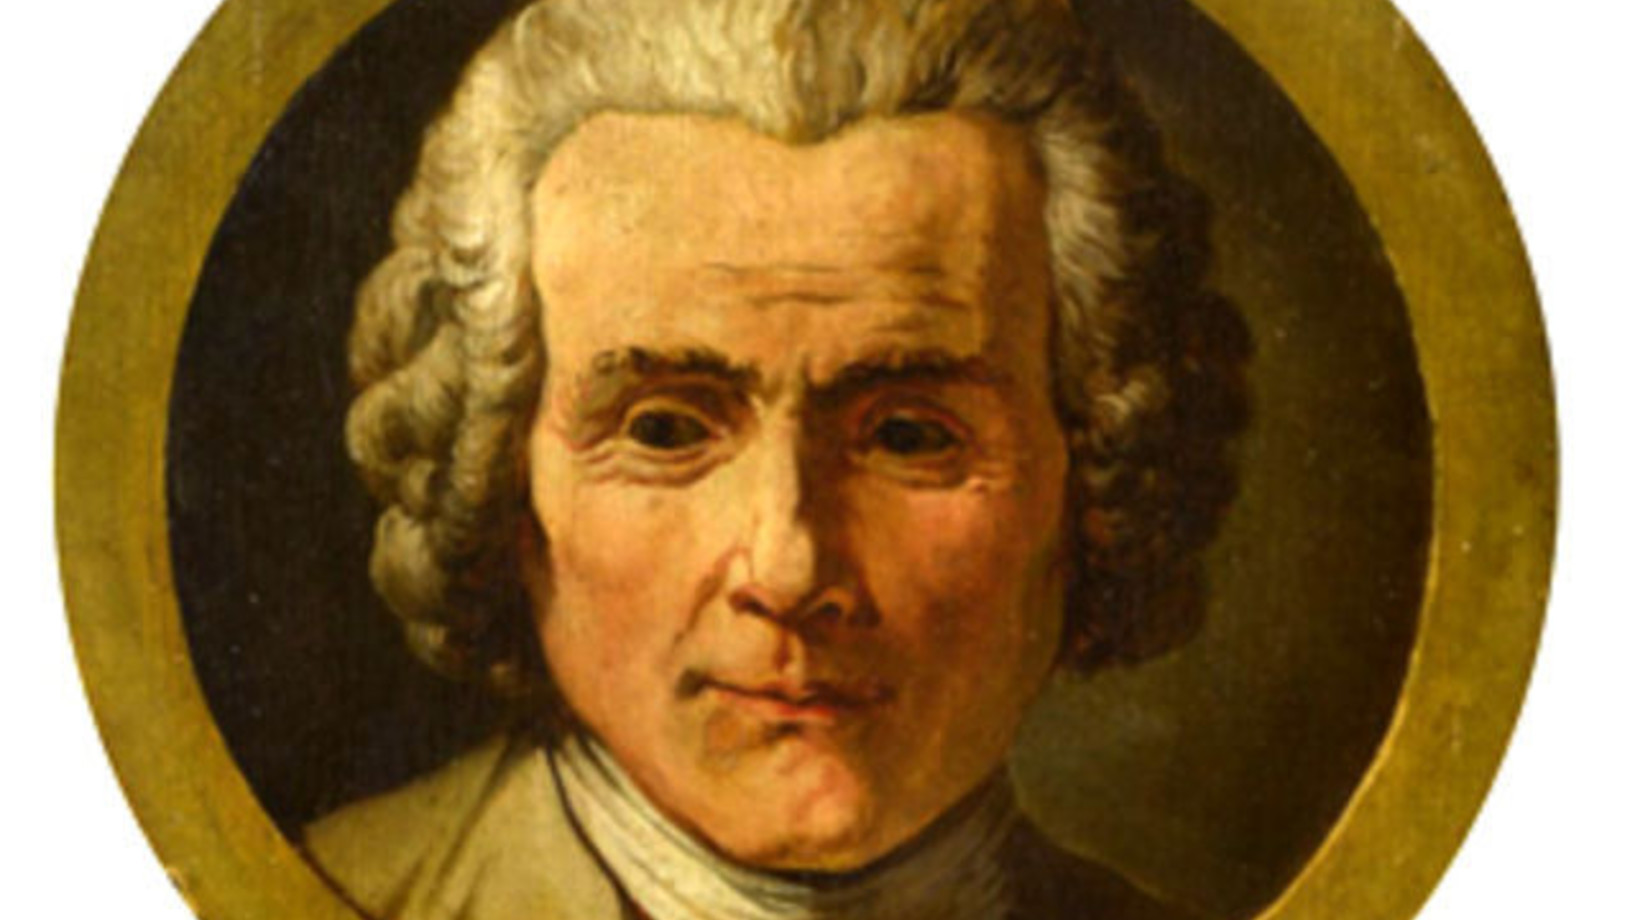 Wenige Tage vor dem 300. Geburtstag am 28. Juni 2012 ist es dem Genfer Musée d'art et d'histoire gelungen, ein auf Holz gemaltes Porträt des grossen Genfer Philosophen zu ersteigern. Das Werk wurde 1794 von Jean-Pierre Saint-Ours gemalt.